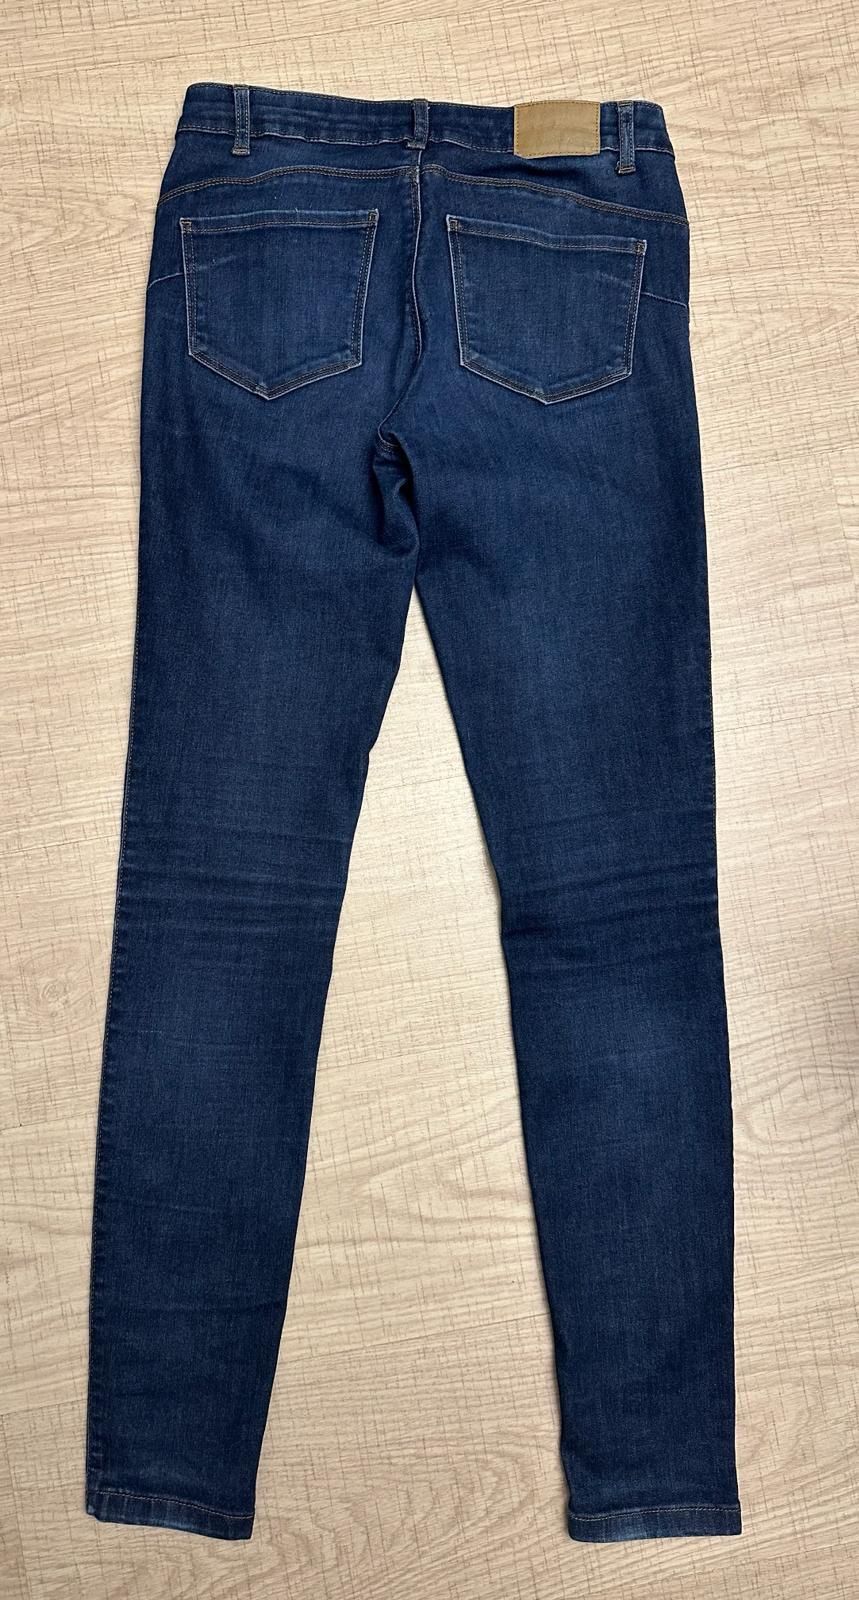 Spodnie jeansy S/L34 Vero Moda